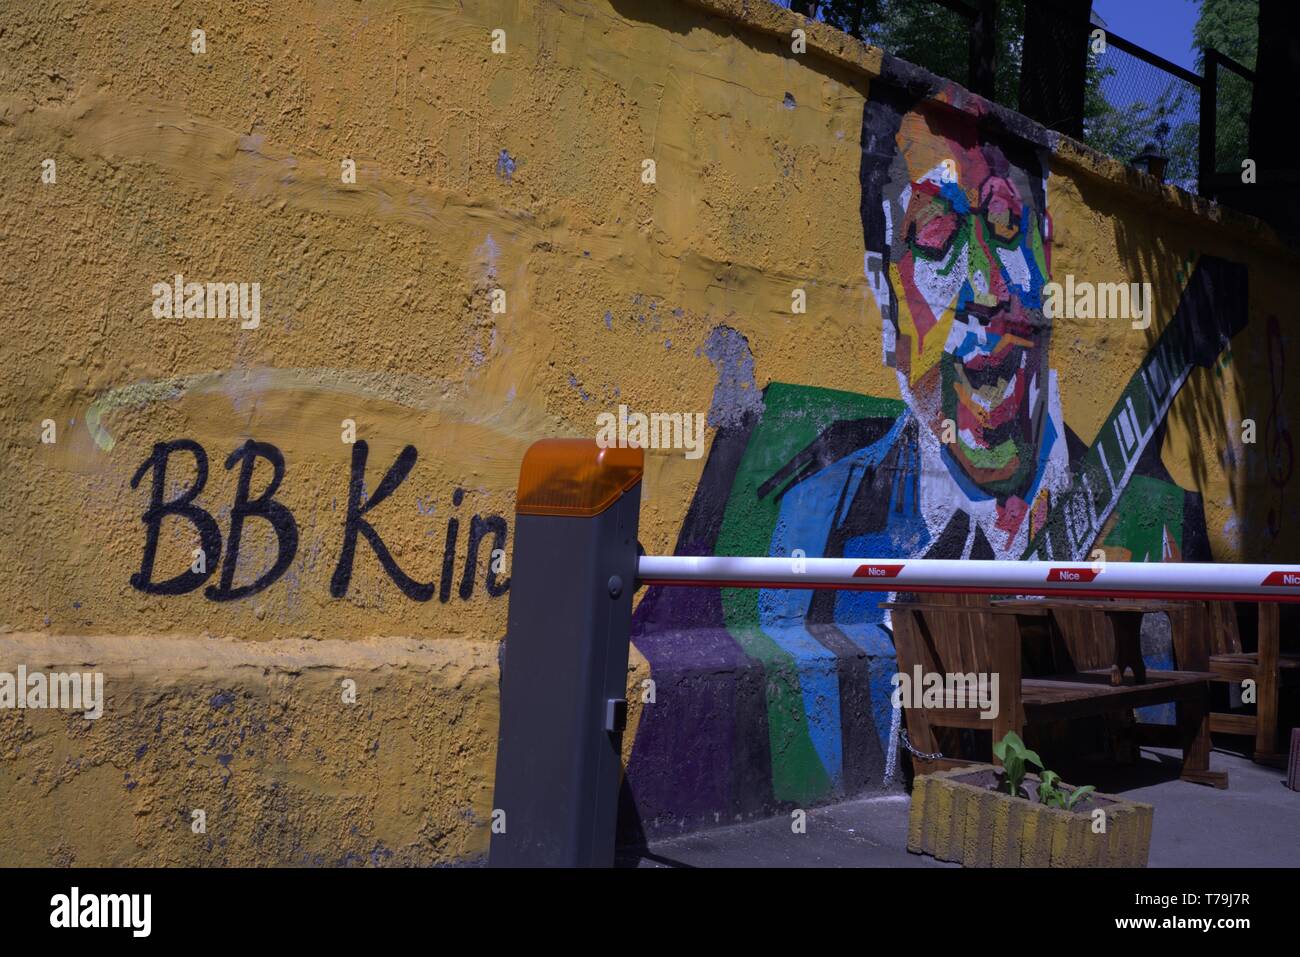 Ein street art Bild von B B King, dem berühmten Musiker, in Kiew, Ukraine. Es ist ein buntes Bild an der Wand. Stockfoto